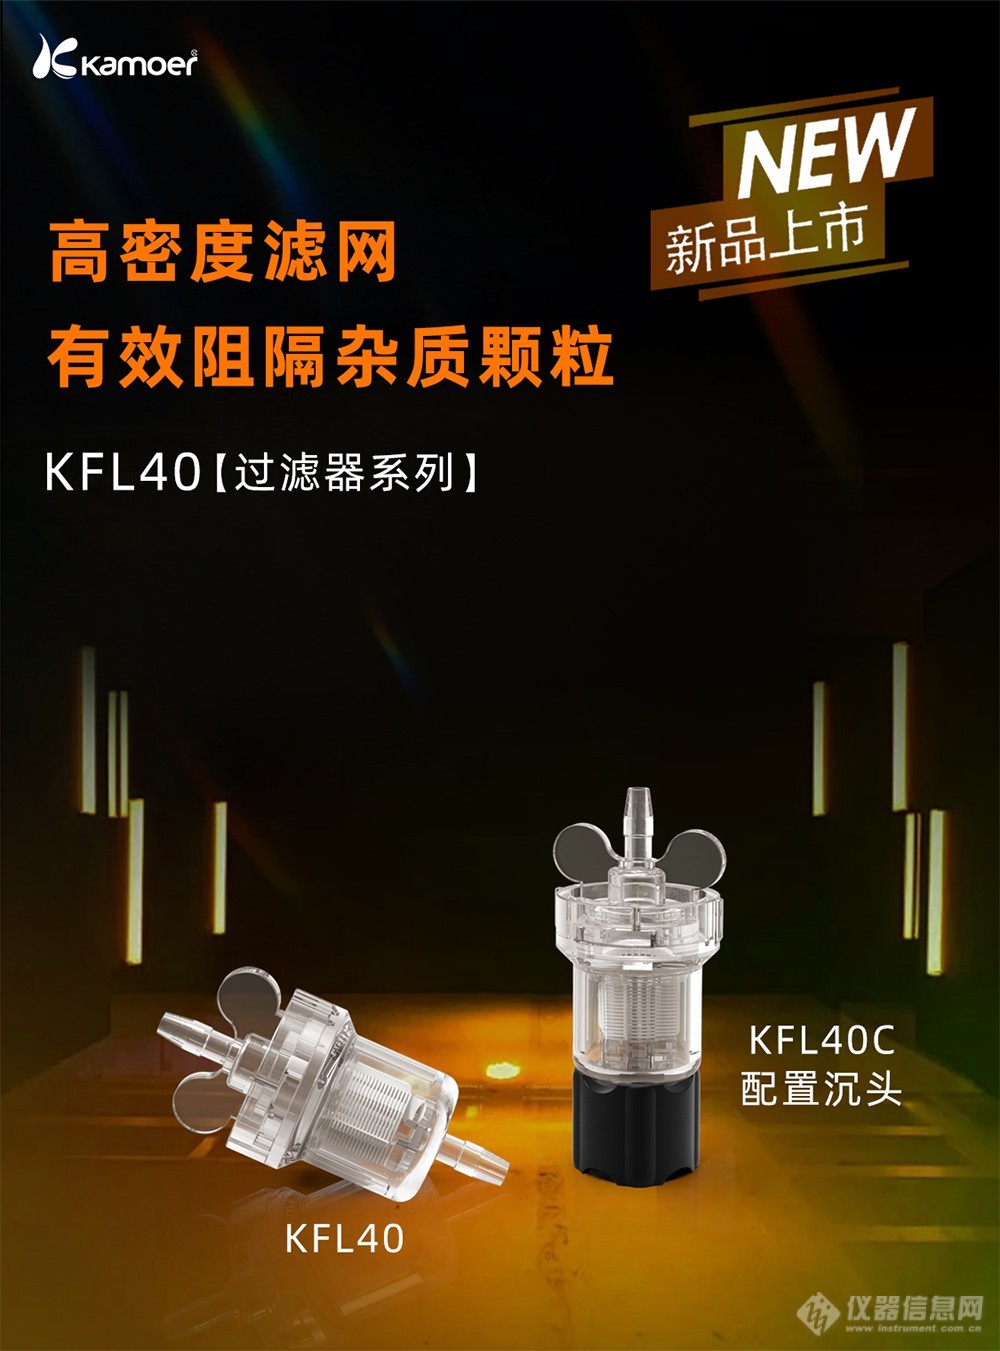 【新品发布】KPK200蠕动泵及KFL40液体过滤器